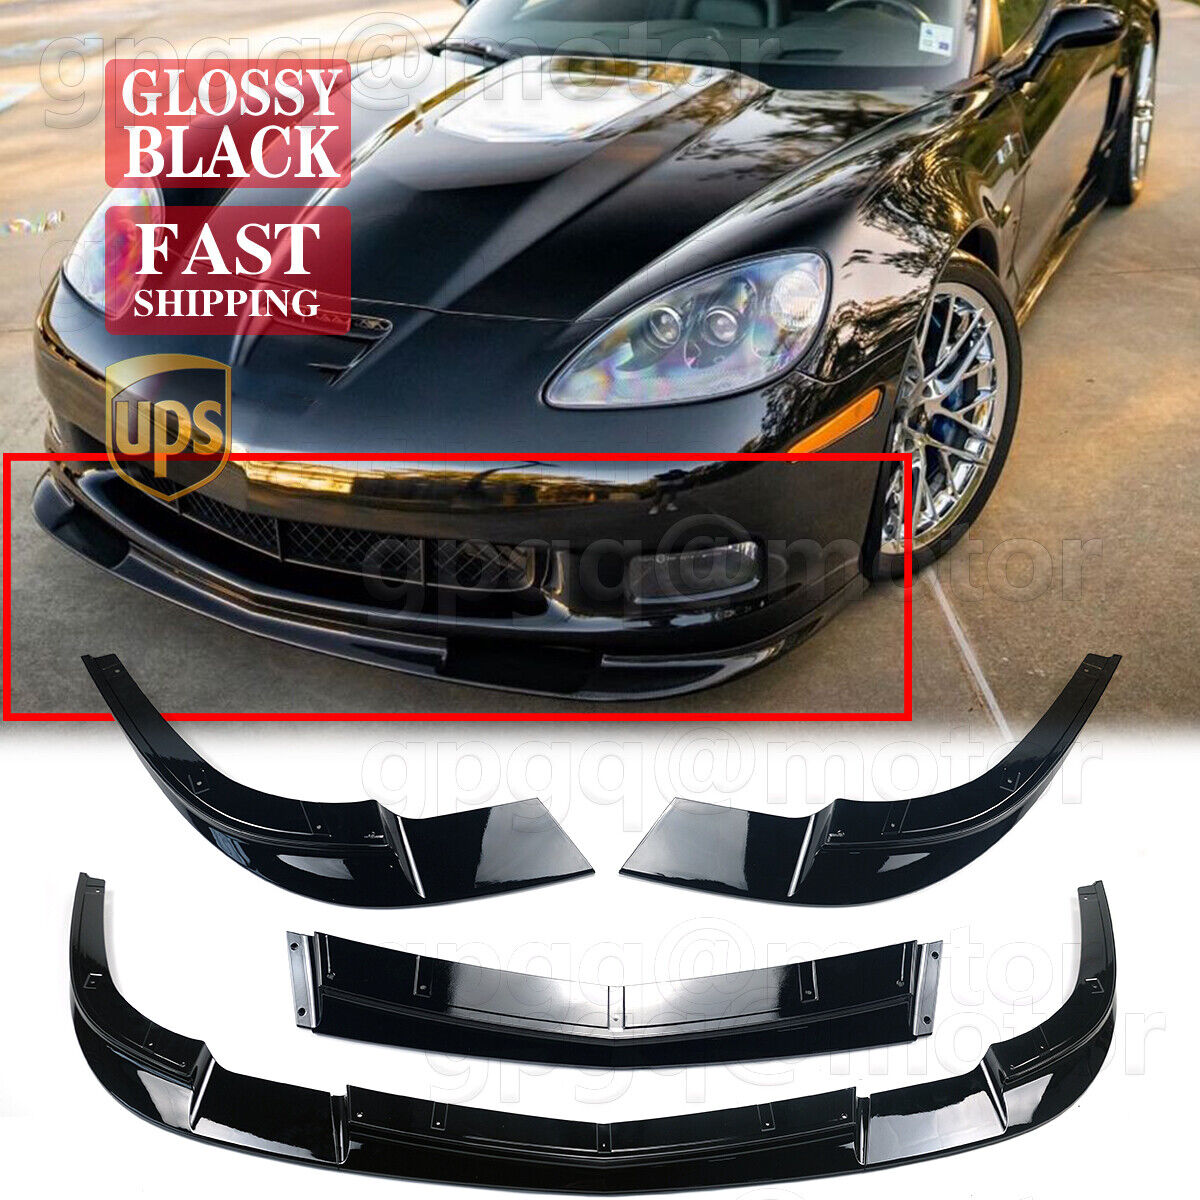 For Corvette C6 Z06 2005-2013 | ZR1 Style Glossy Black Front Bumper Splitter Lip